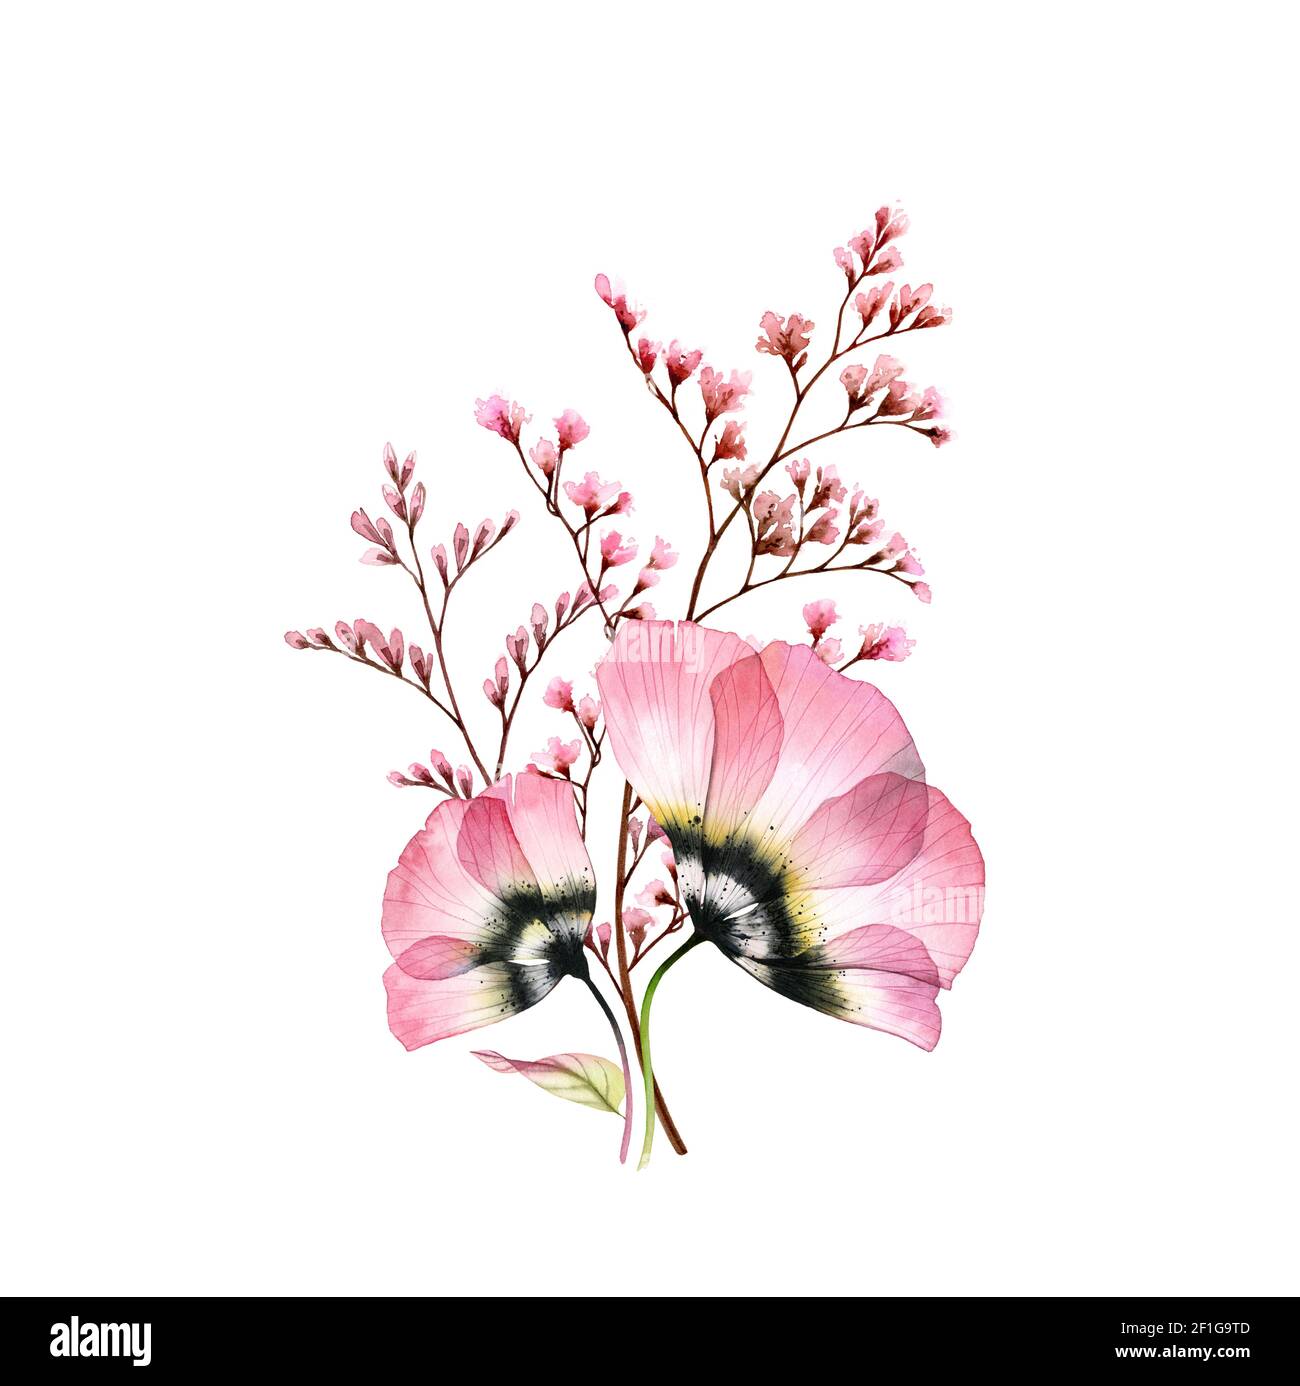 Aquarell-Bouquet. Transparente rosa Anemonen mit zarten Ästen isoliert auf weiß. Handbemalte Vintage-Kunstwerke. Botanische Illustration für Karten Stockfoto